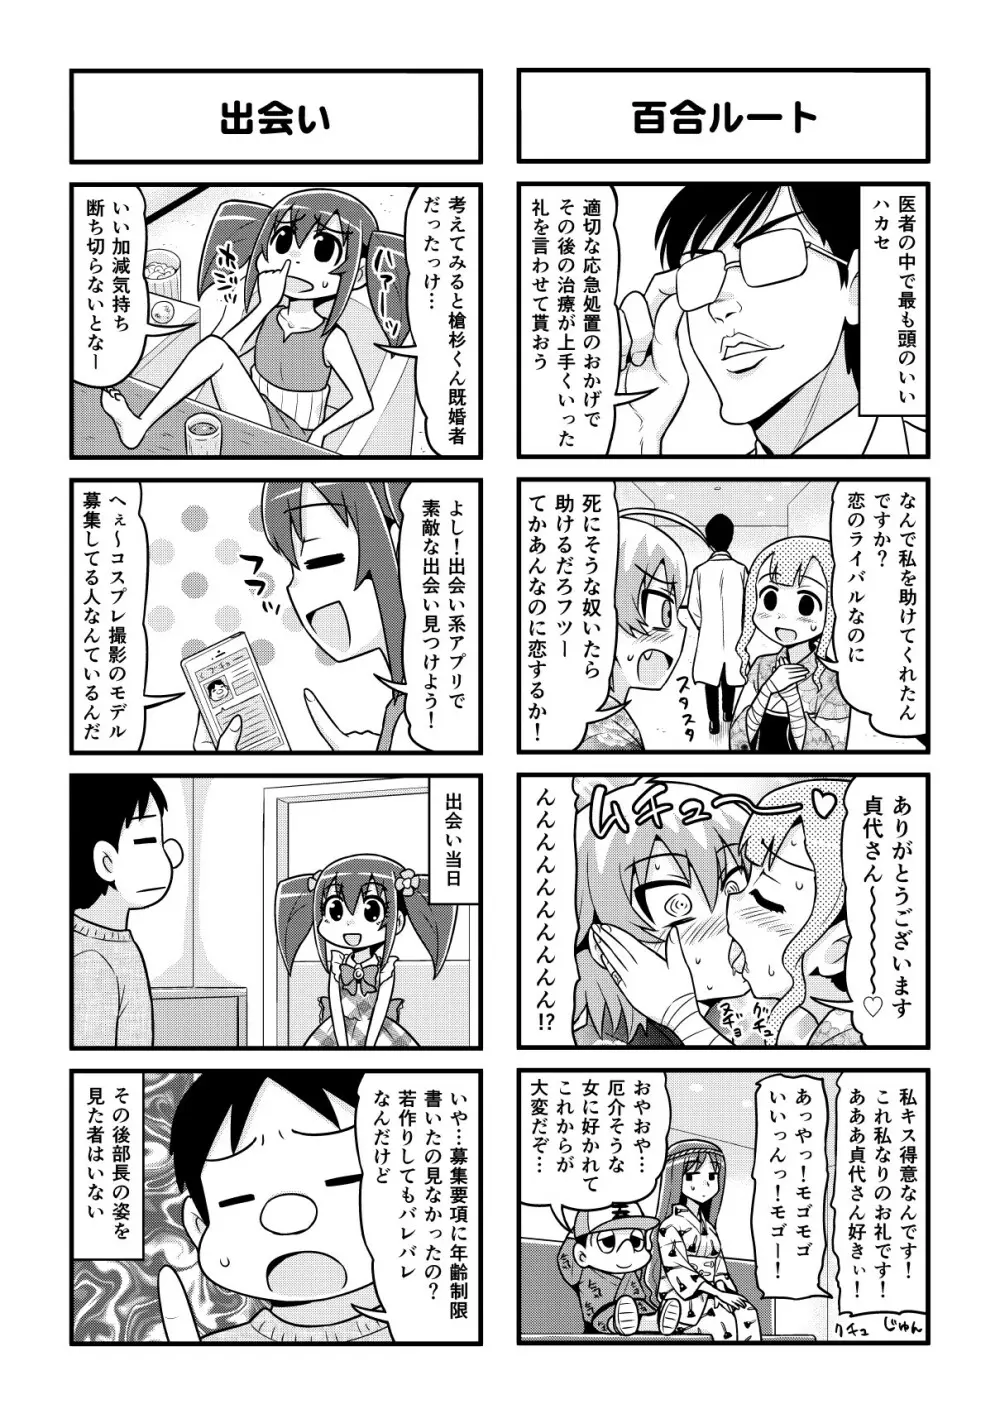 のんきBOY 1-48 - page310